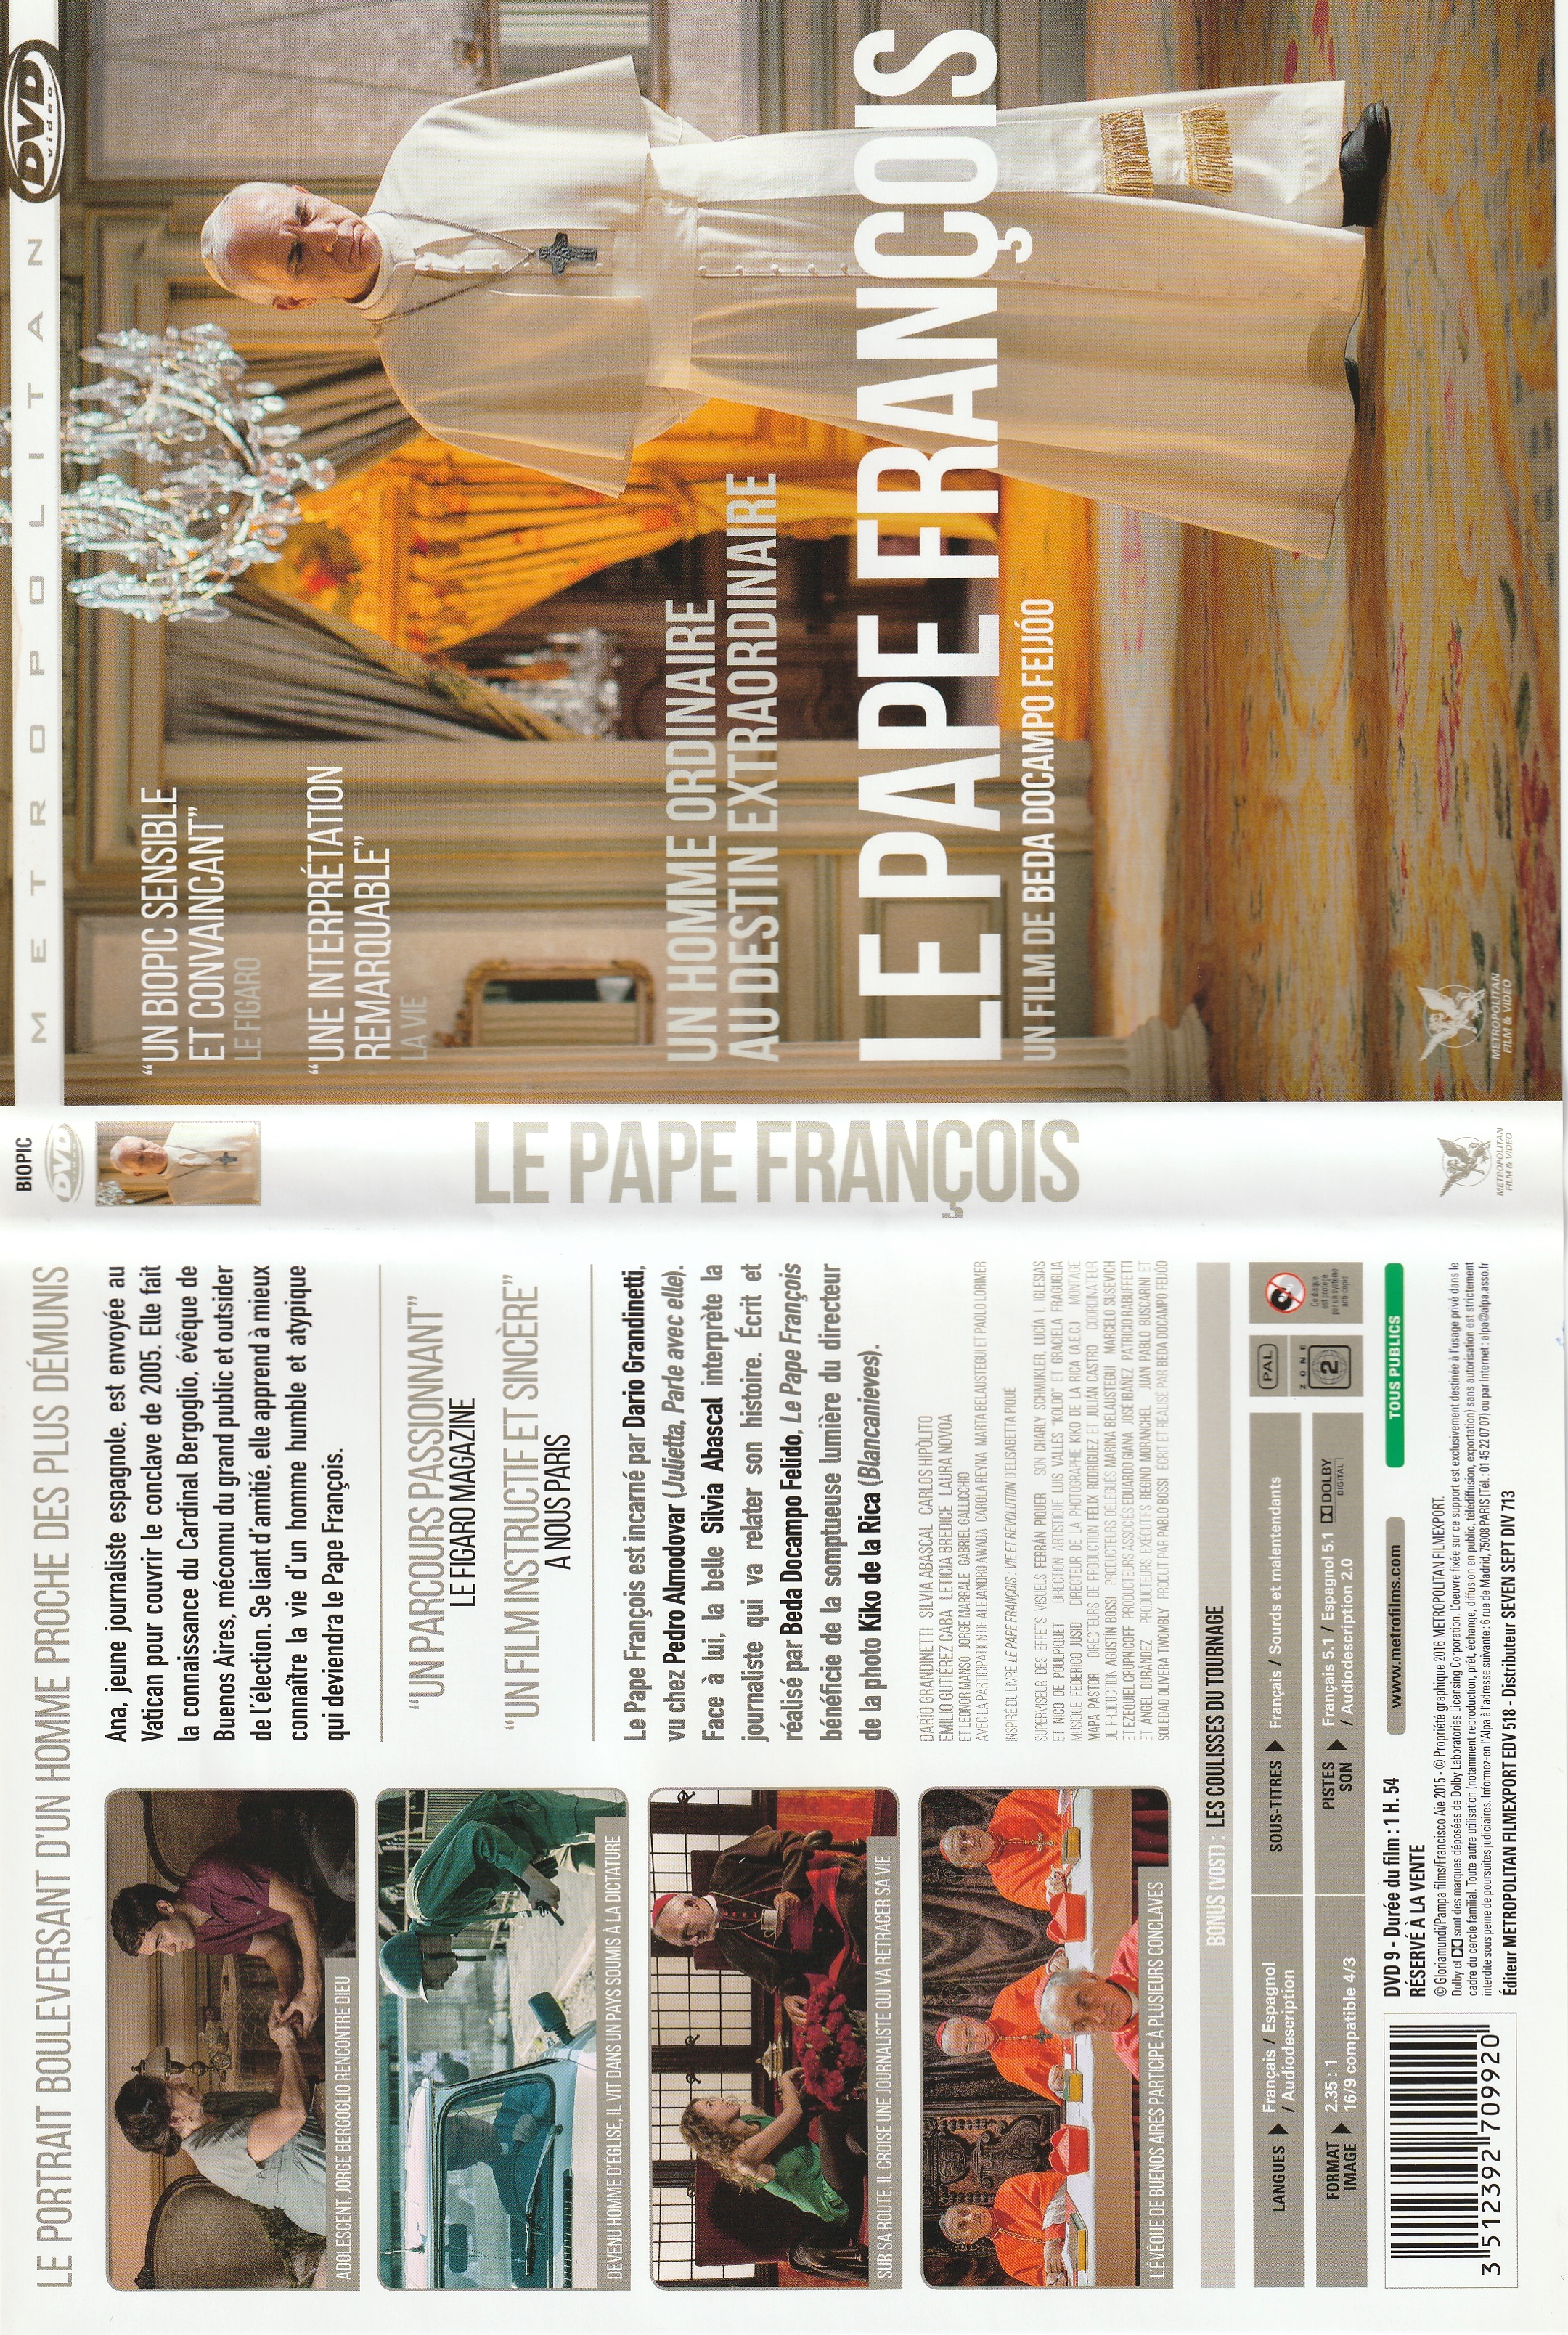 Jaquette DVD Le pape Francois